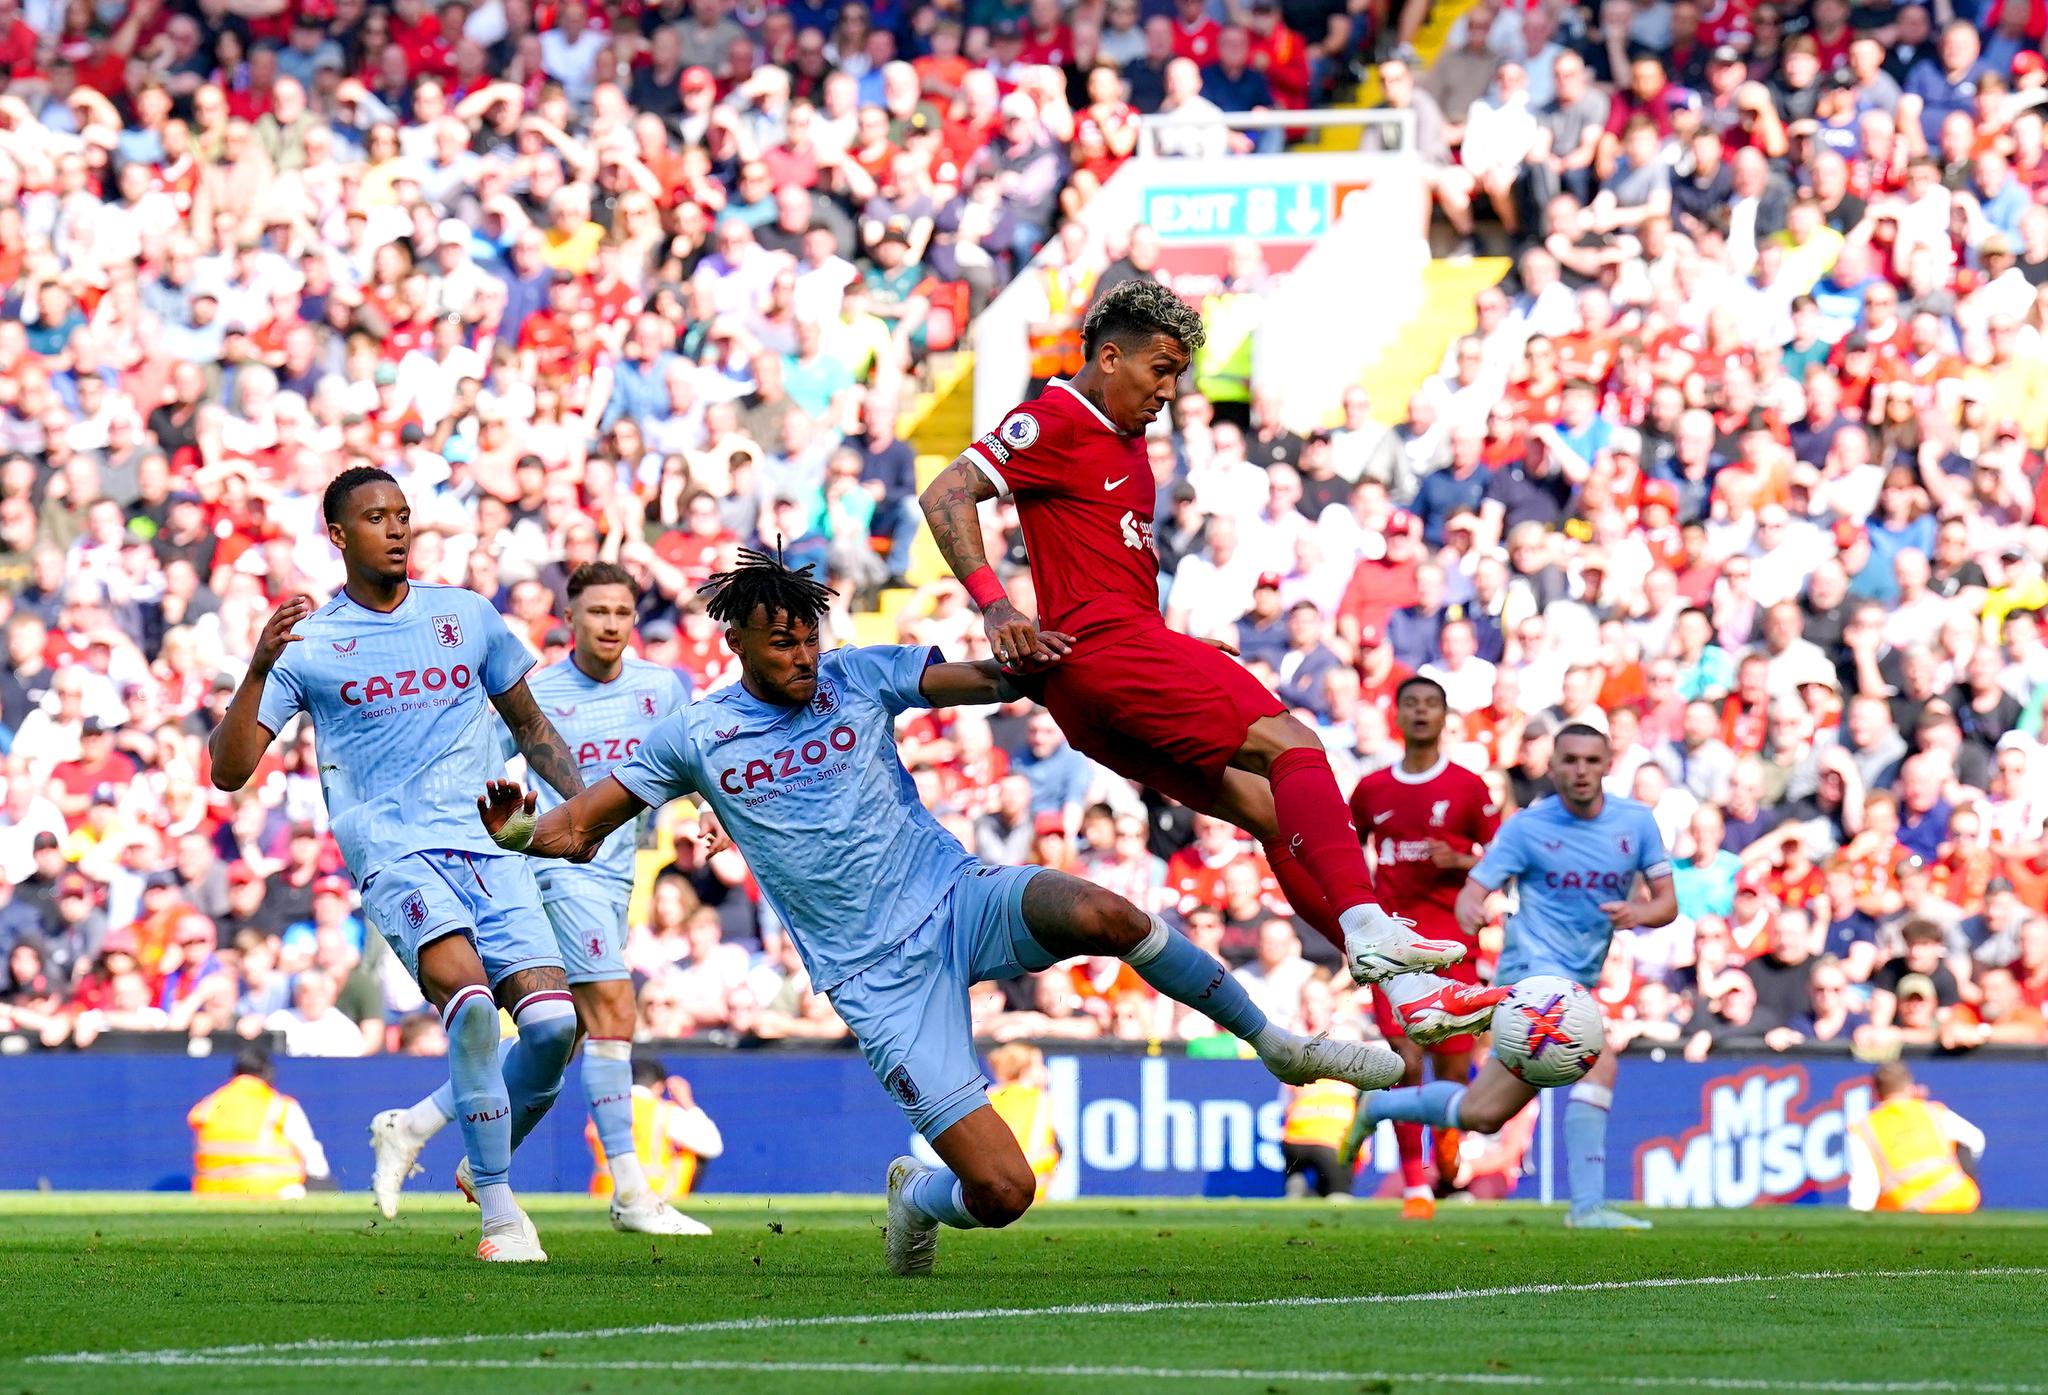 UTLIGNET: Roberto Firmino tente håpet for Liverpool med en sen scoring i kampen.